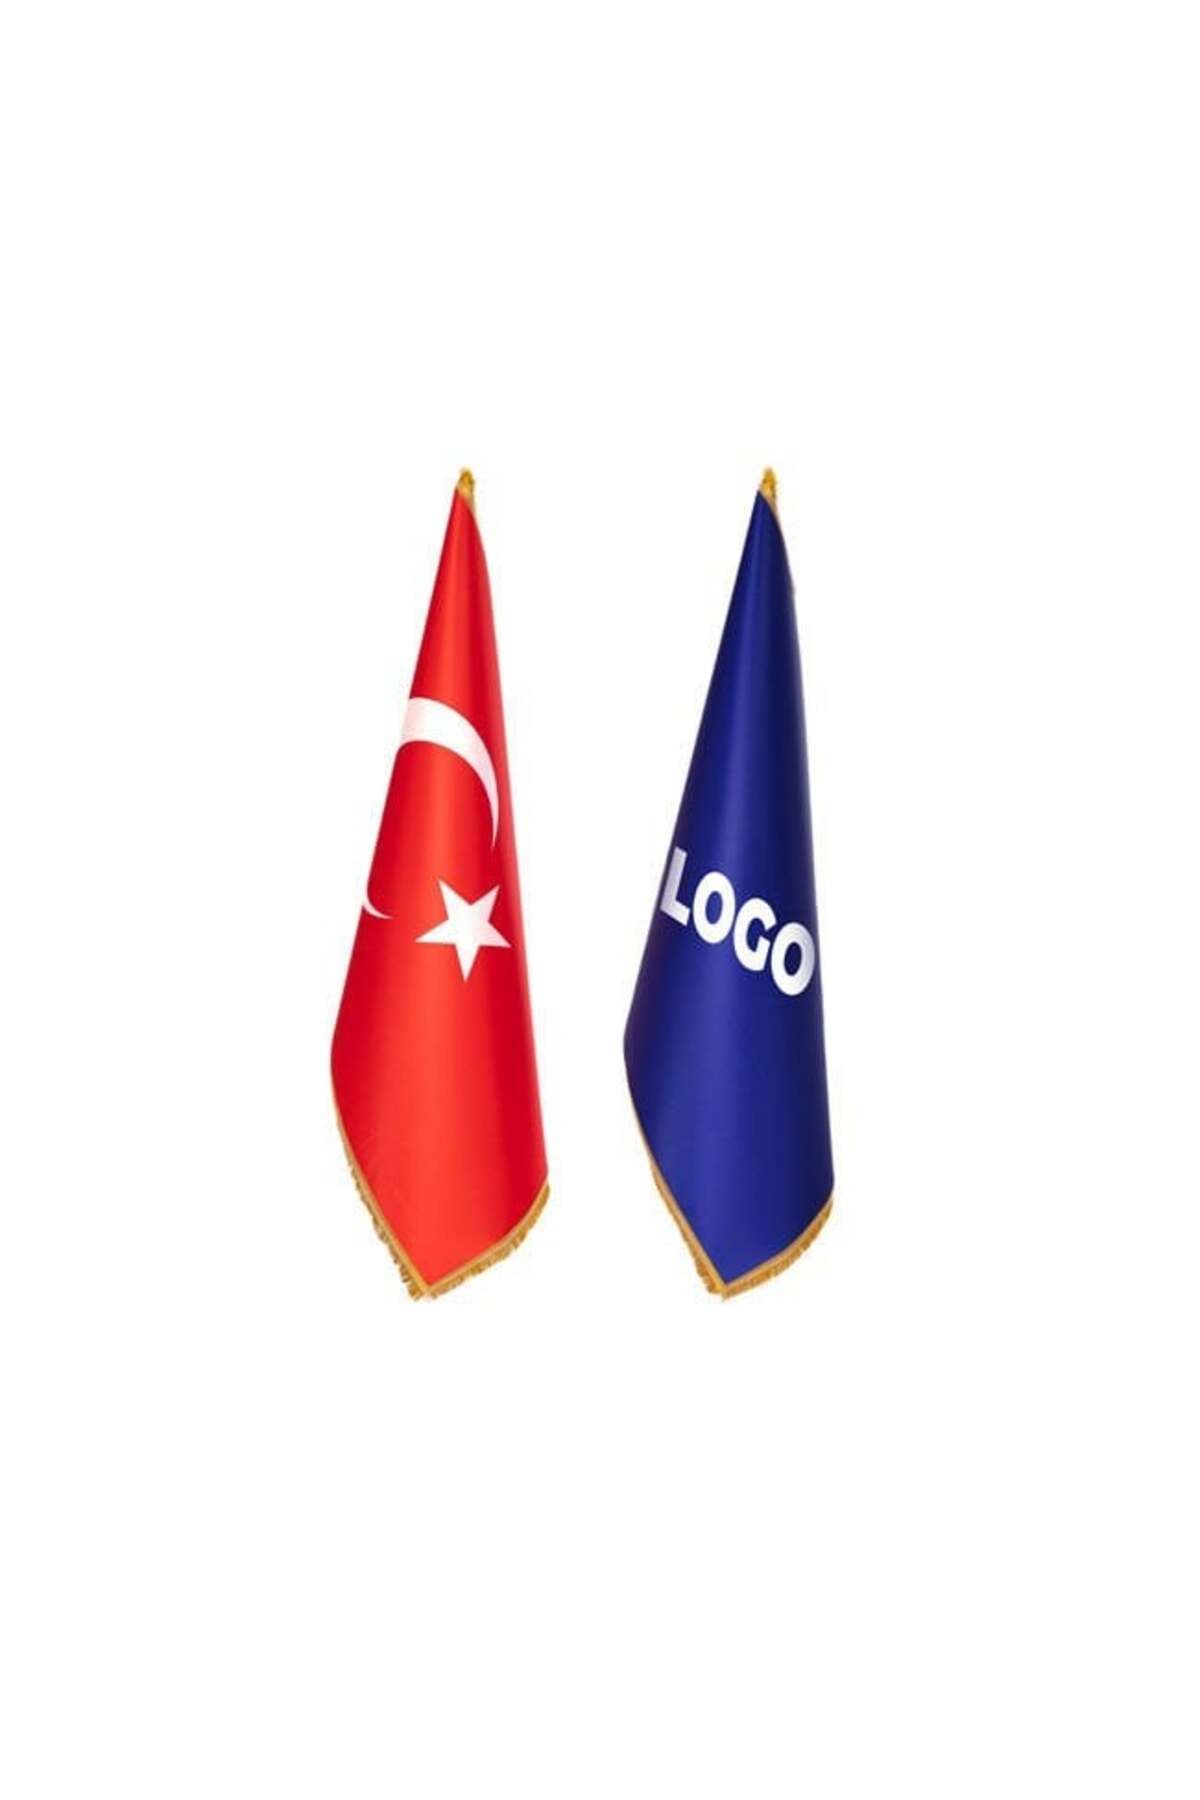 Flagtürk Türk Makam Bayrağı ve Logolu Makam Bayrağı (Direksiz ve Simli)